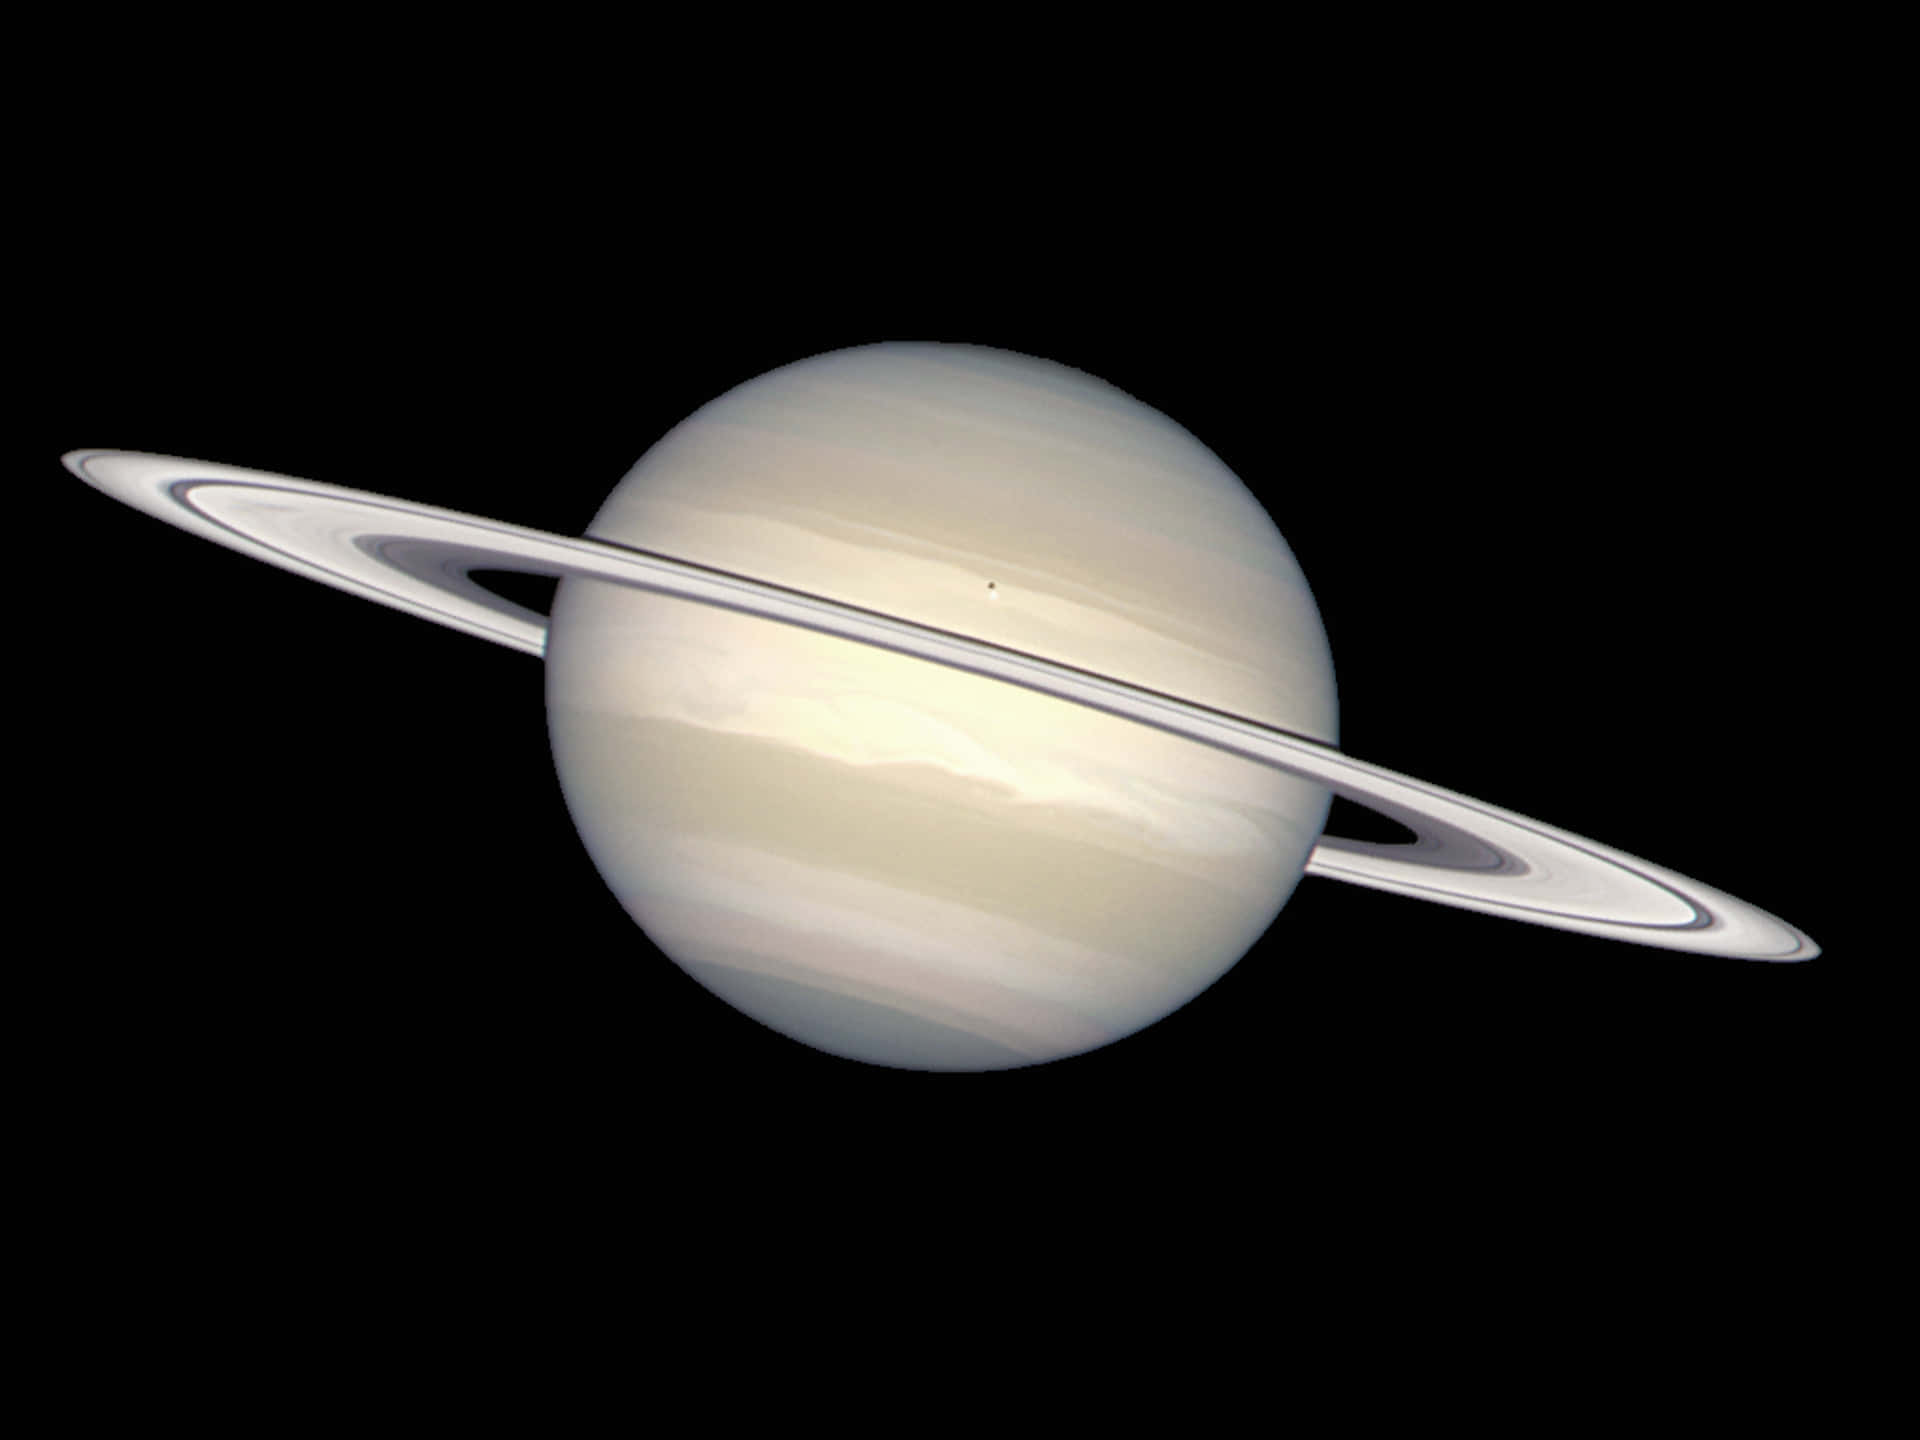 Udsigtenaf Saturn Og Dens Smukke Ringe.